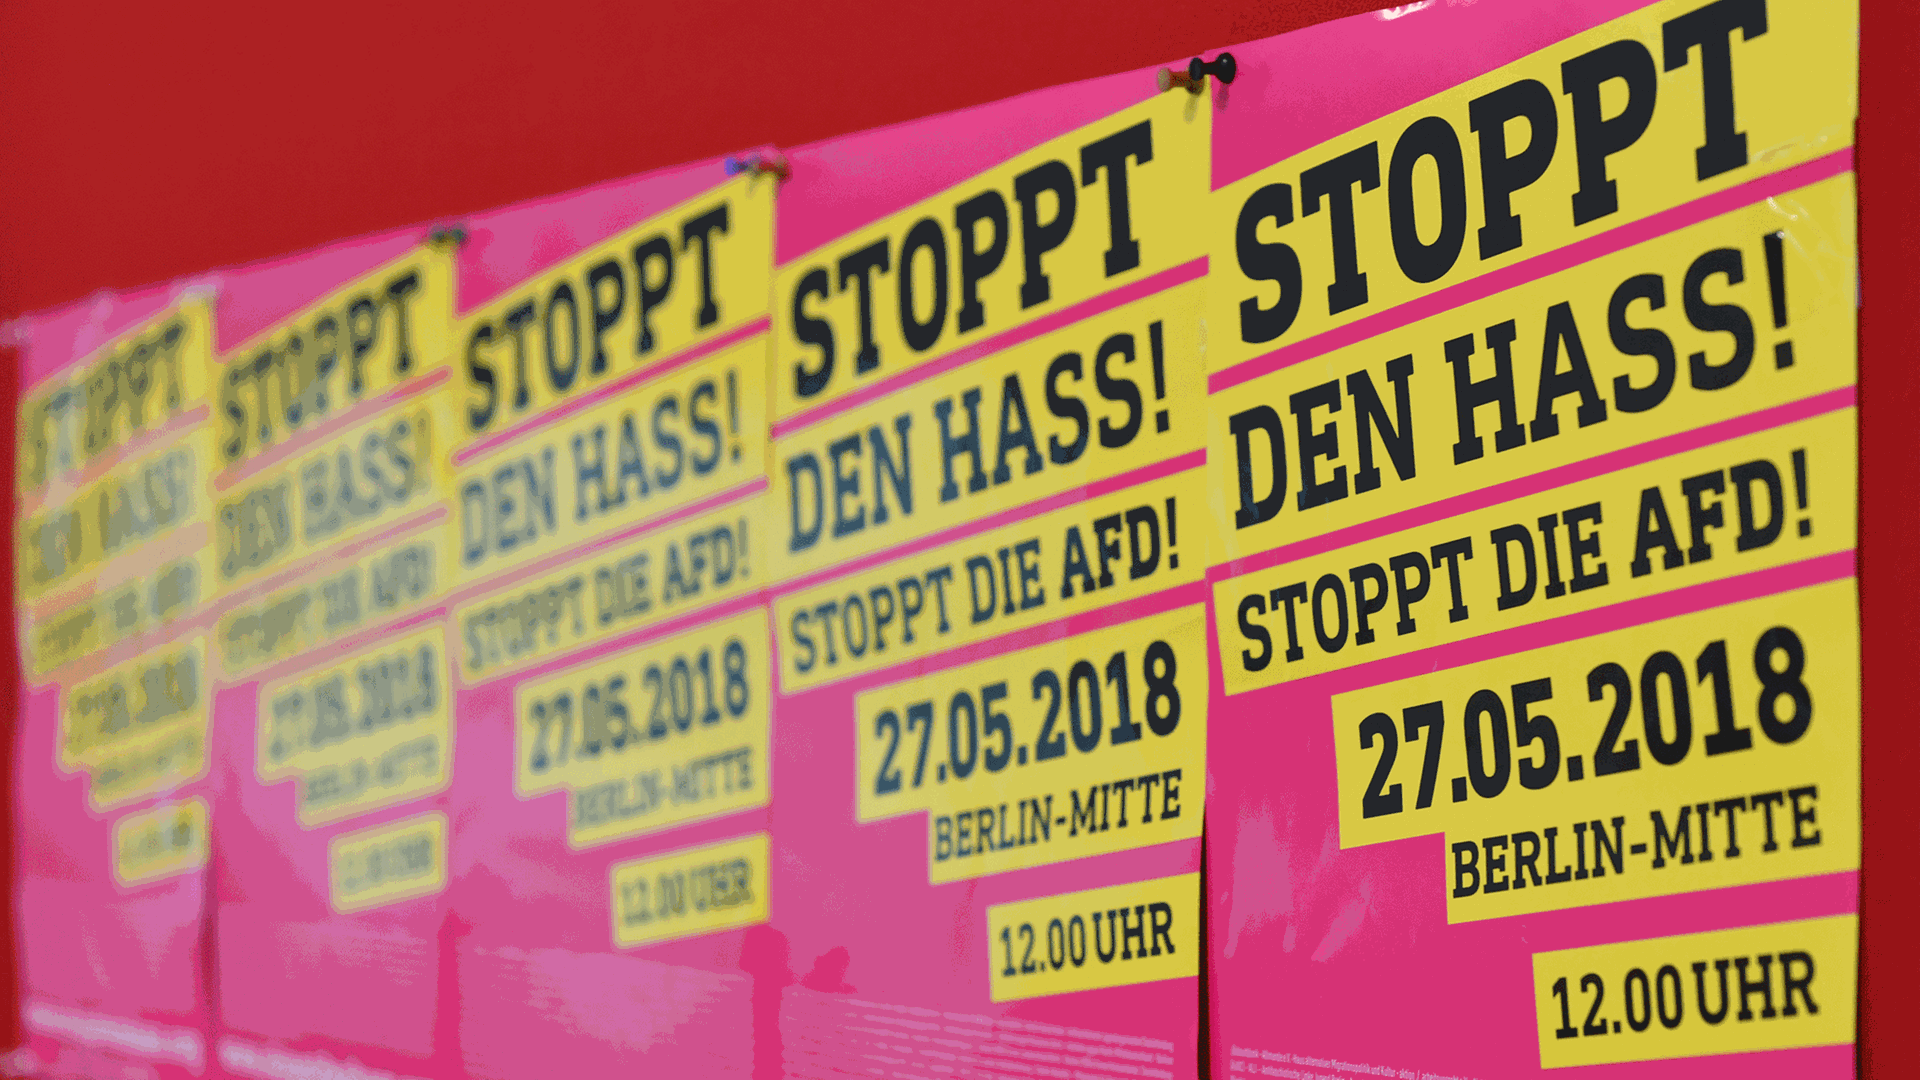 Diese Plakate hängen bei einem Pressegespräch des Bündnisses "Stoppt den Hass - Stoppt die AfD" an einer Wand.